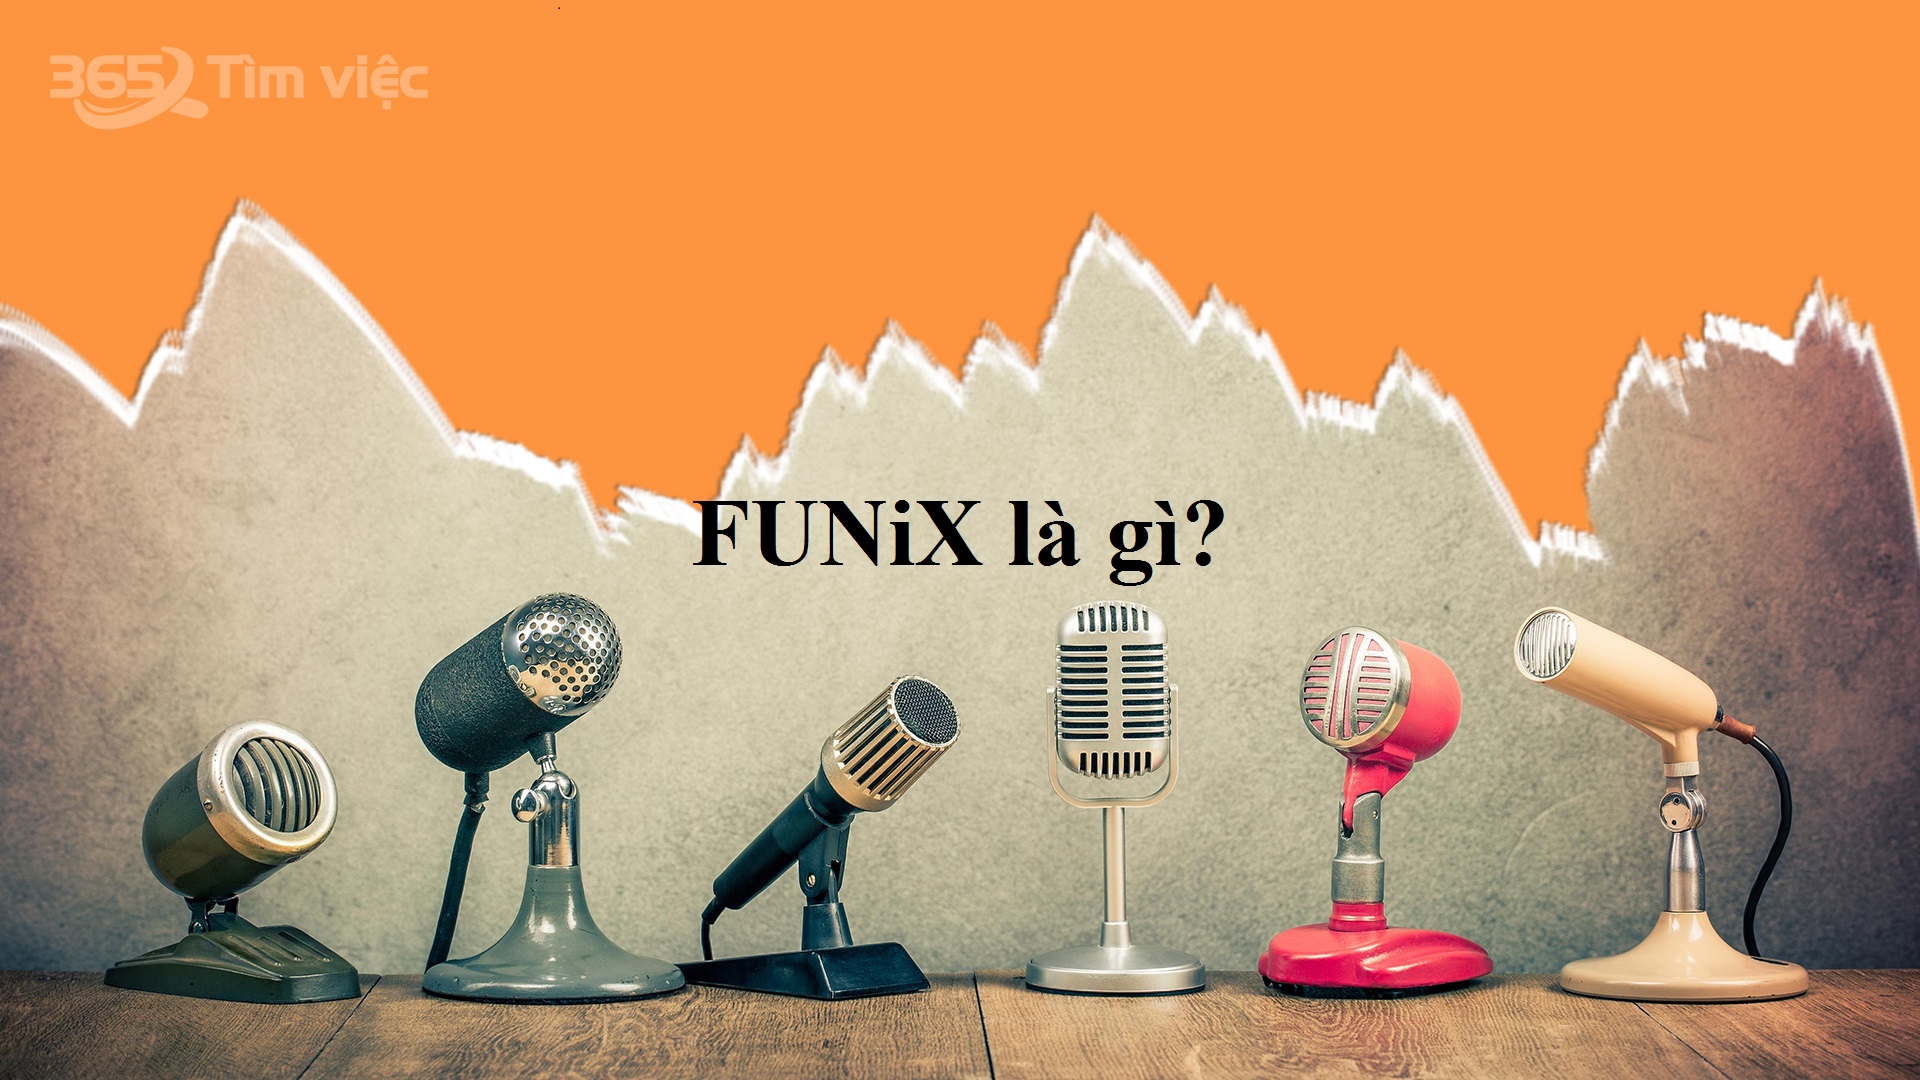 FUNiX là gì?